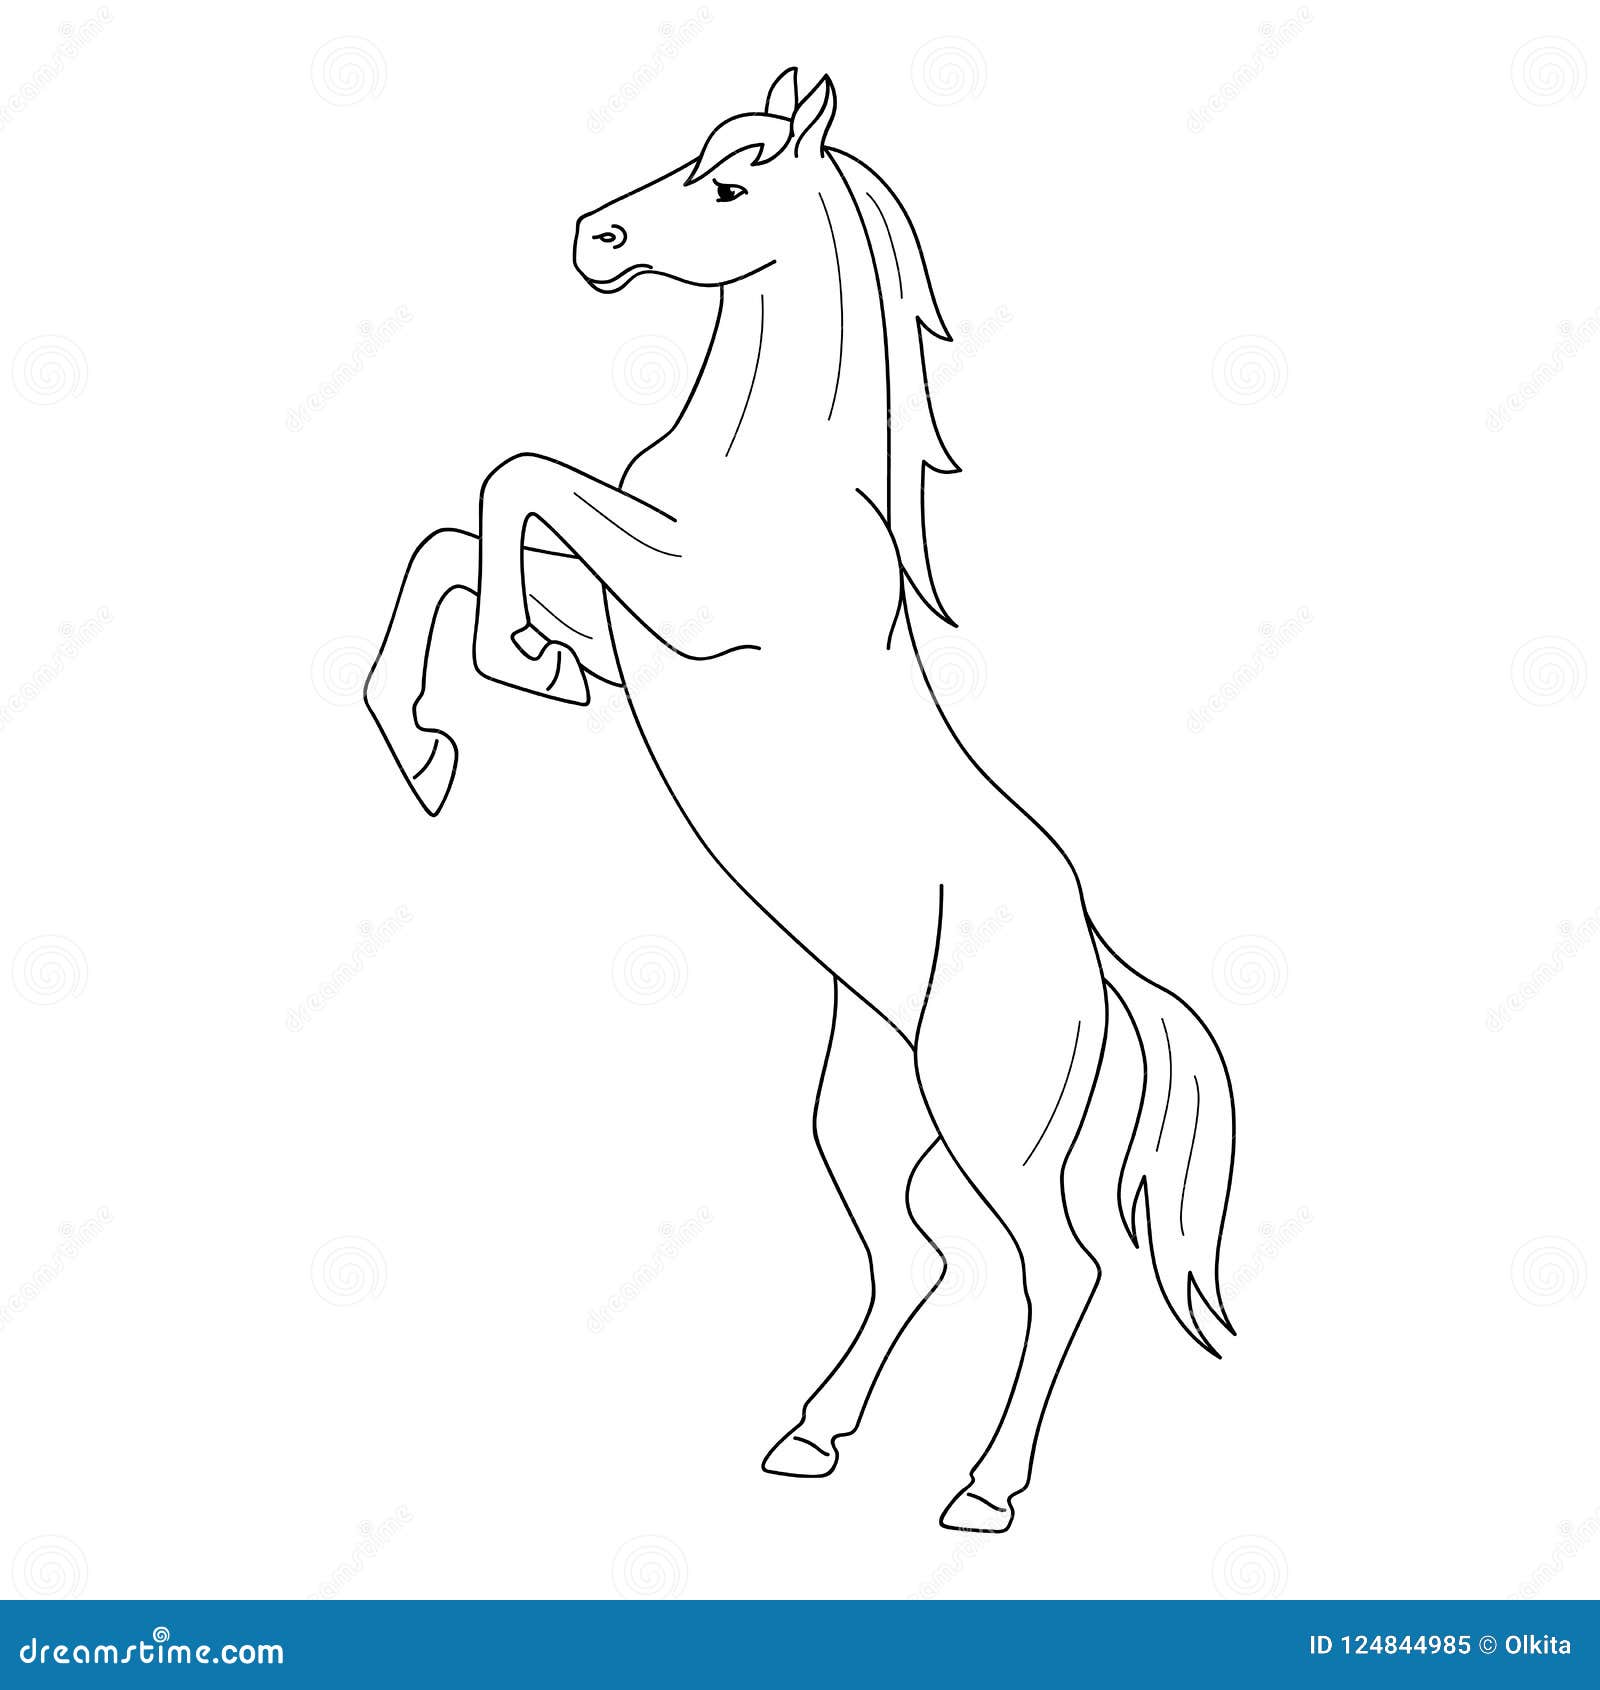 Desenhos para colorir de desenho de um homem saltando com seu cavalo para  colorir online 